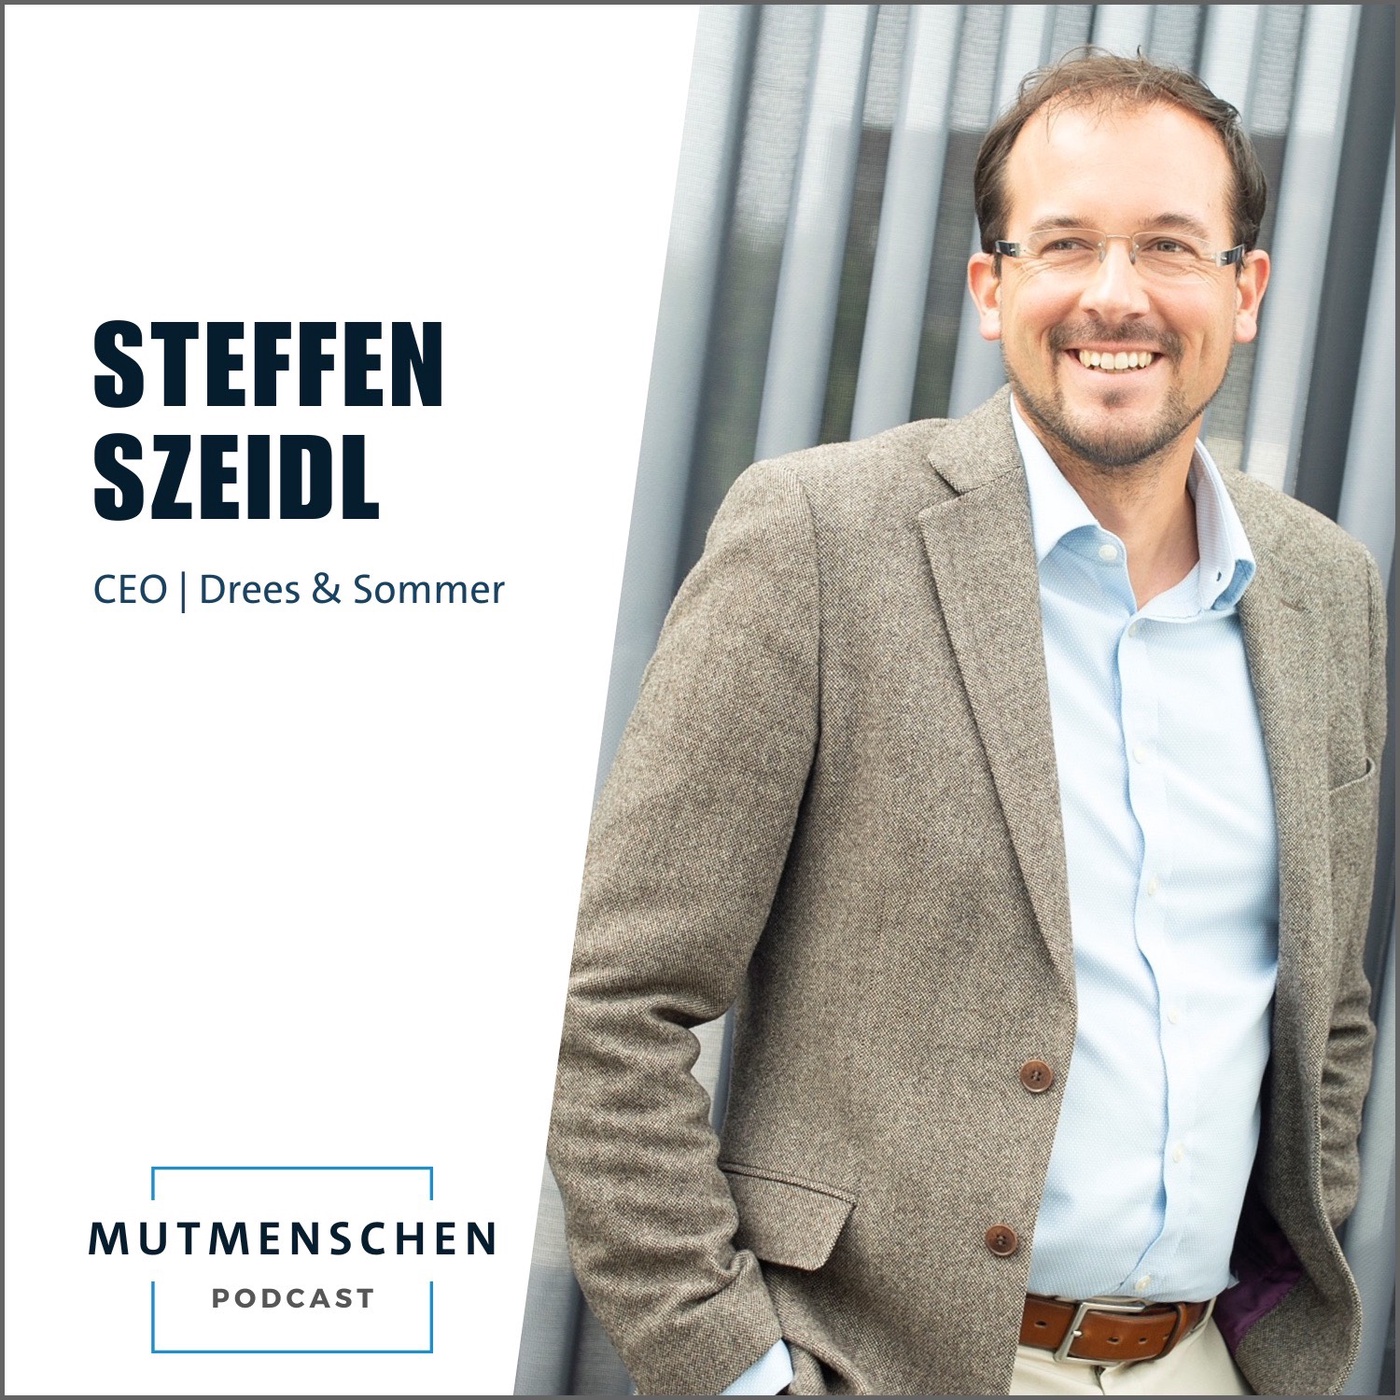 Steffen Szeidl (CEO bei Drees & Sommer) | Mutmenschen #35